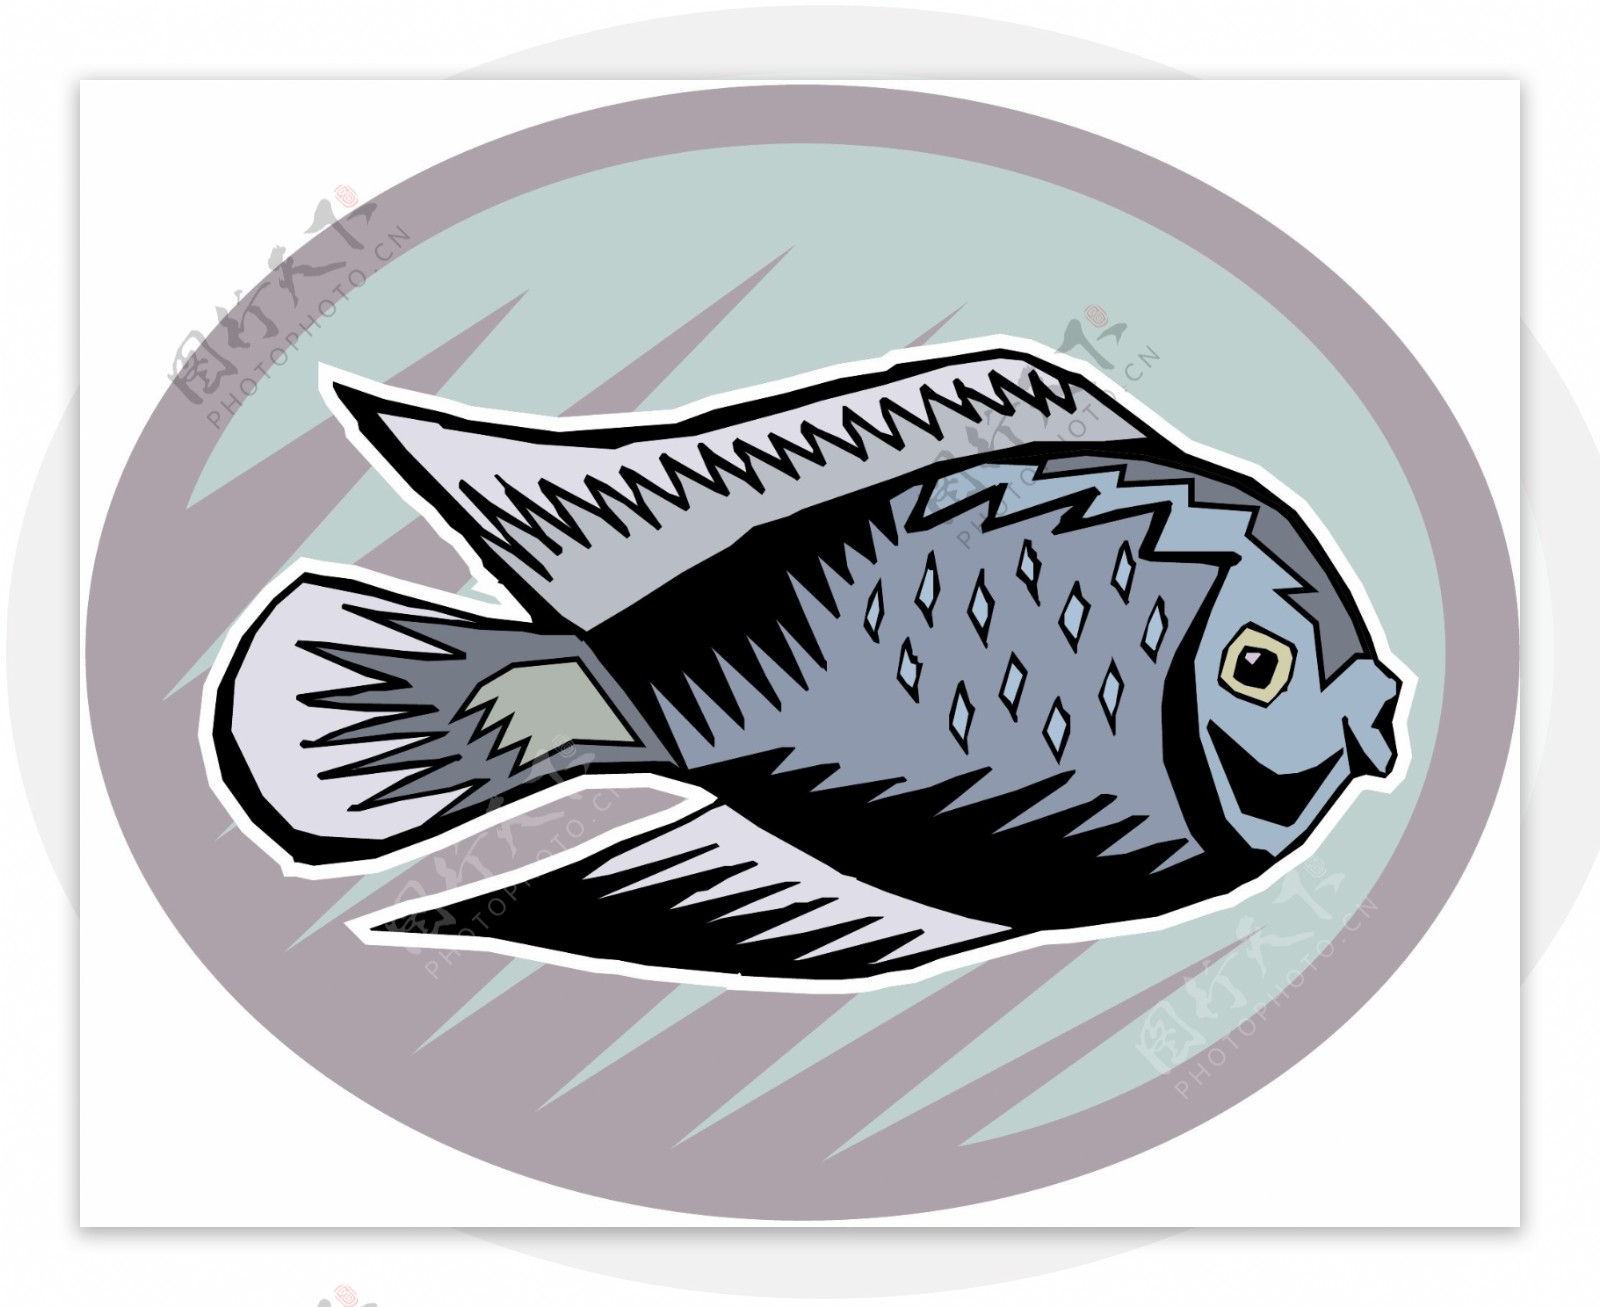 五彩小鱼水生动物矢量素材EPS格式0680